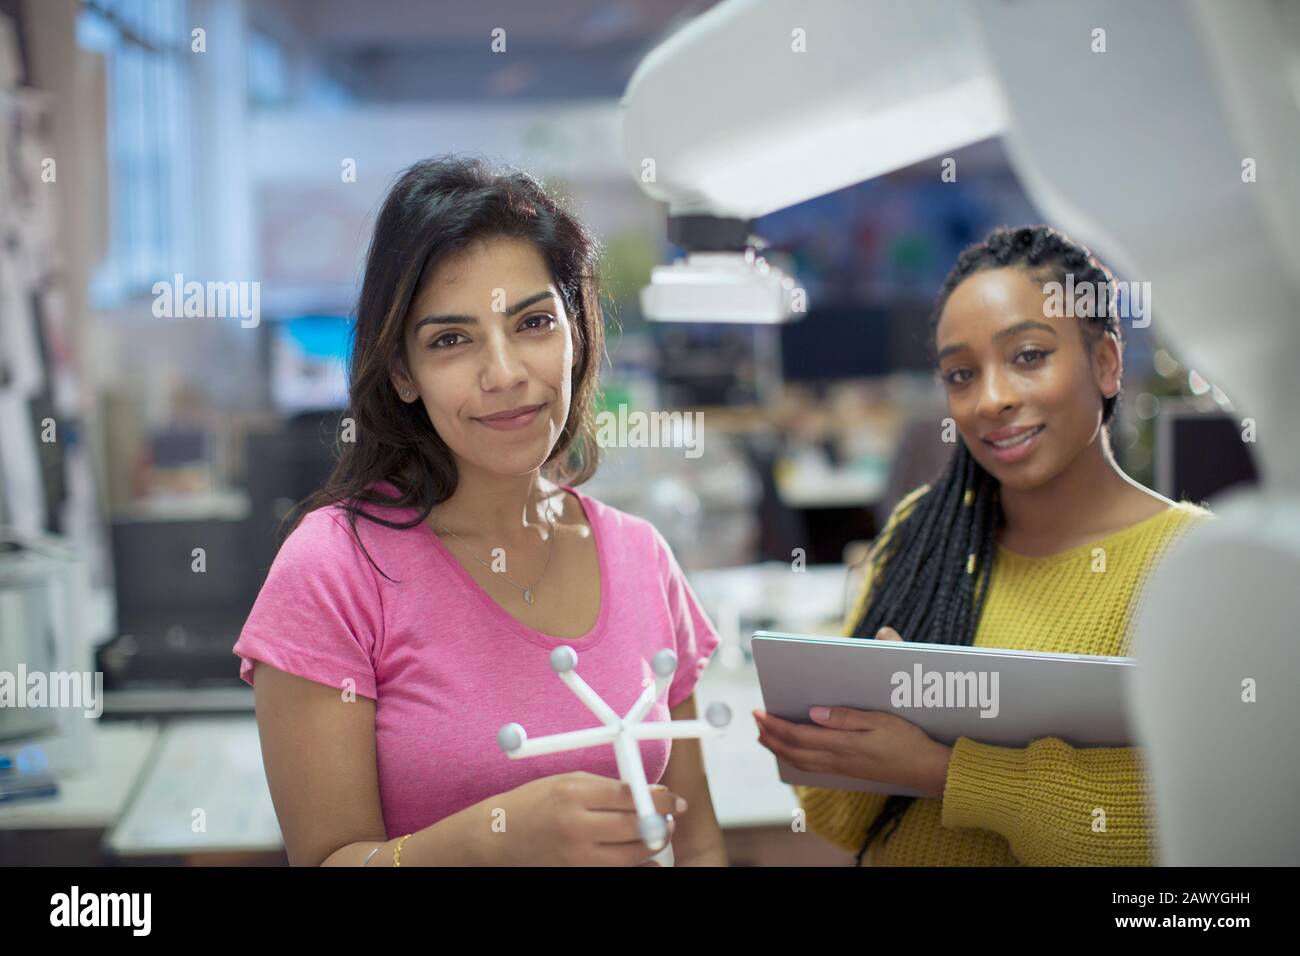 Portraits d'ingénieurs femmes confiants avec prototype et bras robotisé au bureau Banque D'Images